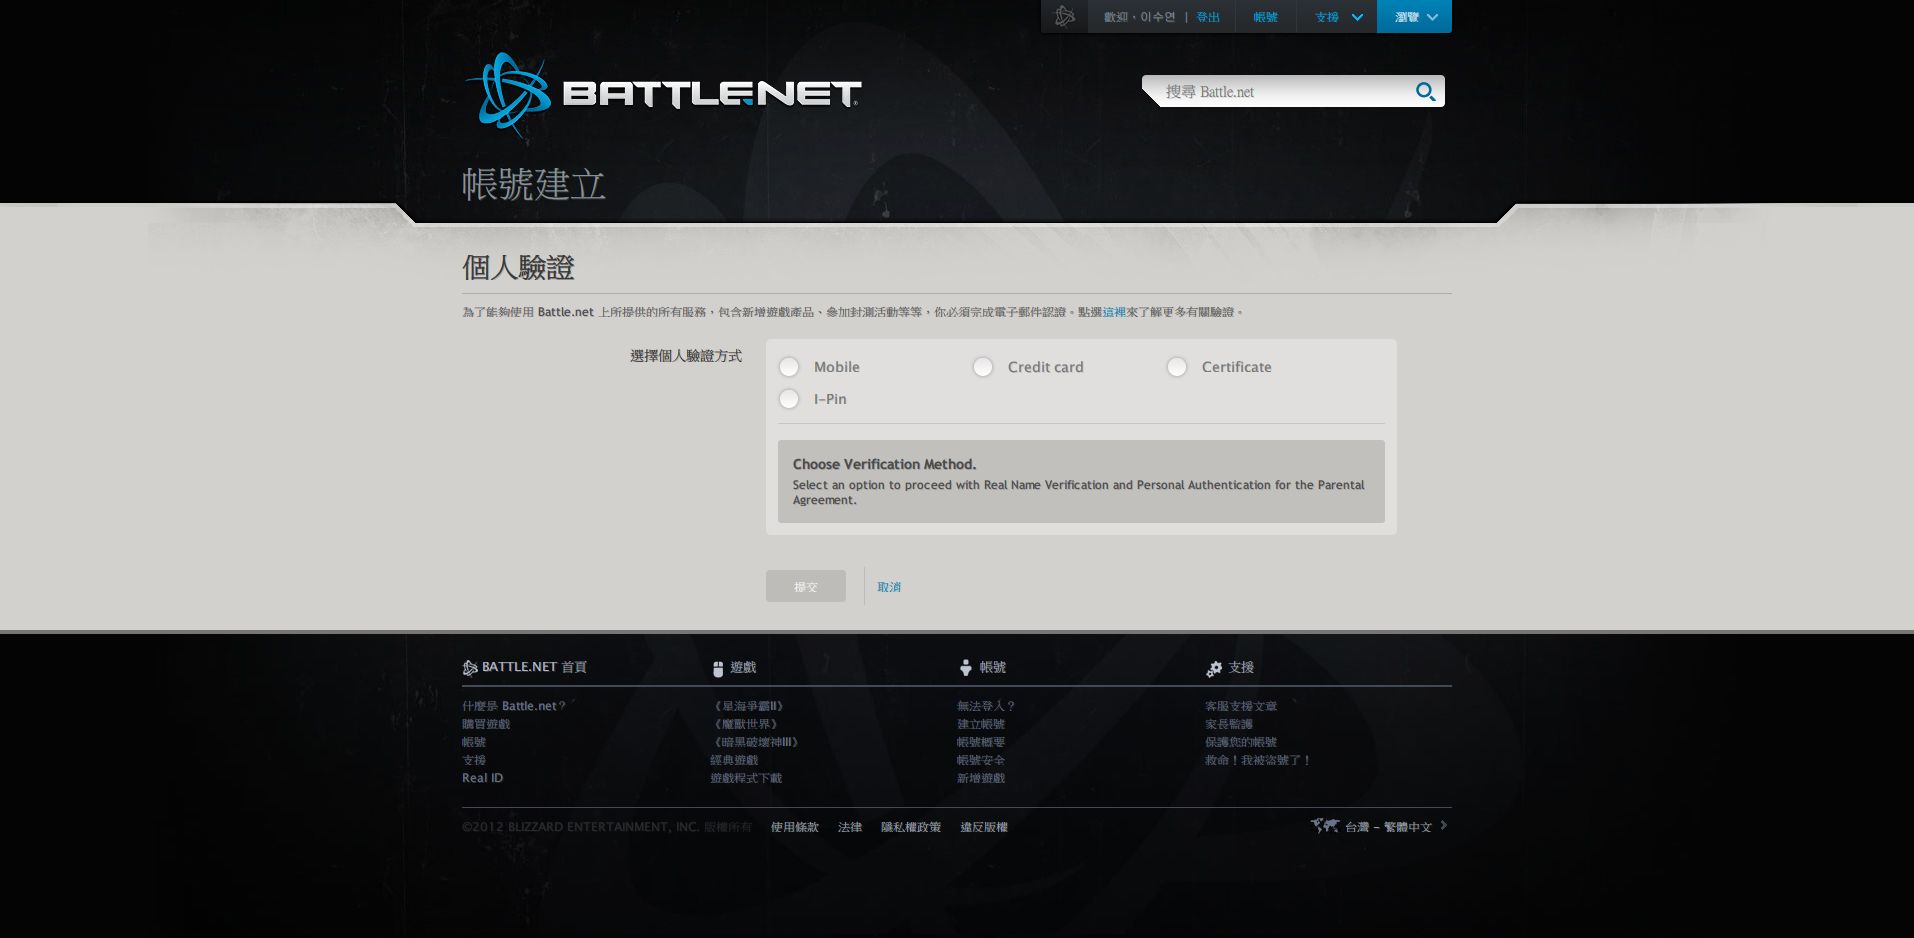 [問題] 現在的battle.net"網頁"